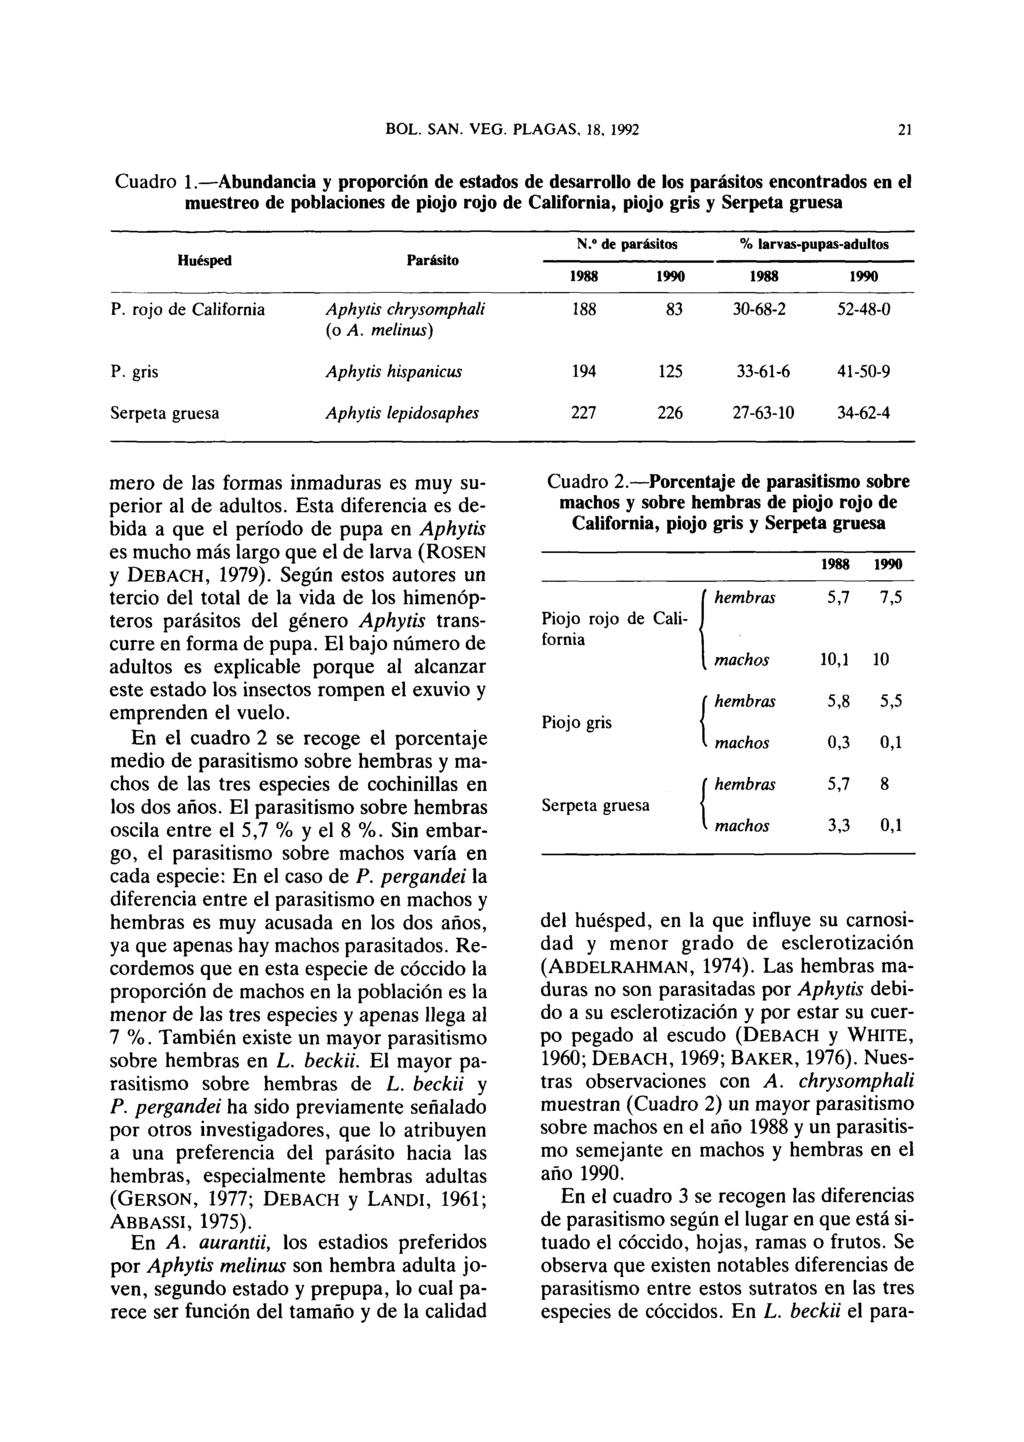 Cuadro 1. Abundancia y proporción de estados de desarrollo de los parásitos encontrados en el muestreo de poblaciones de piojo rojo de California, piojo gris y Serpeta gruesa Huésped Parásito N.